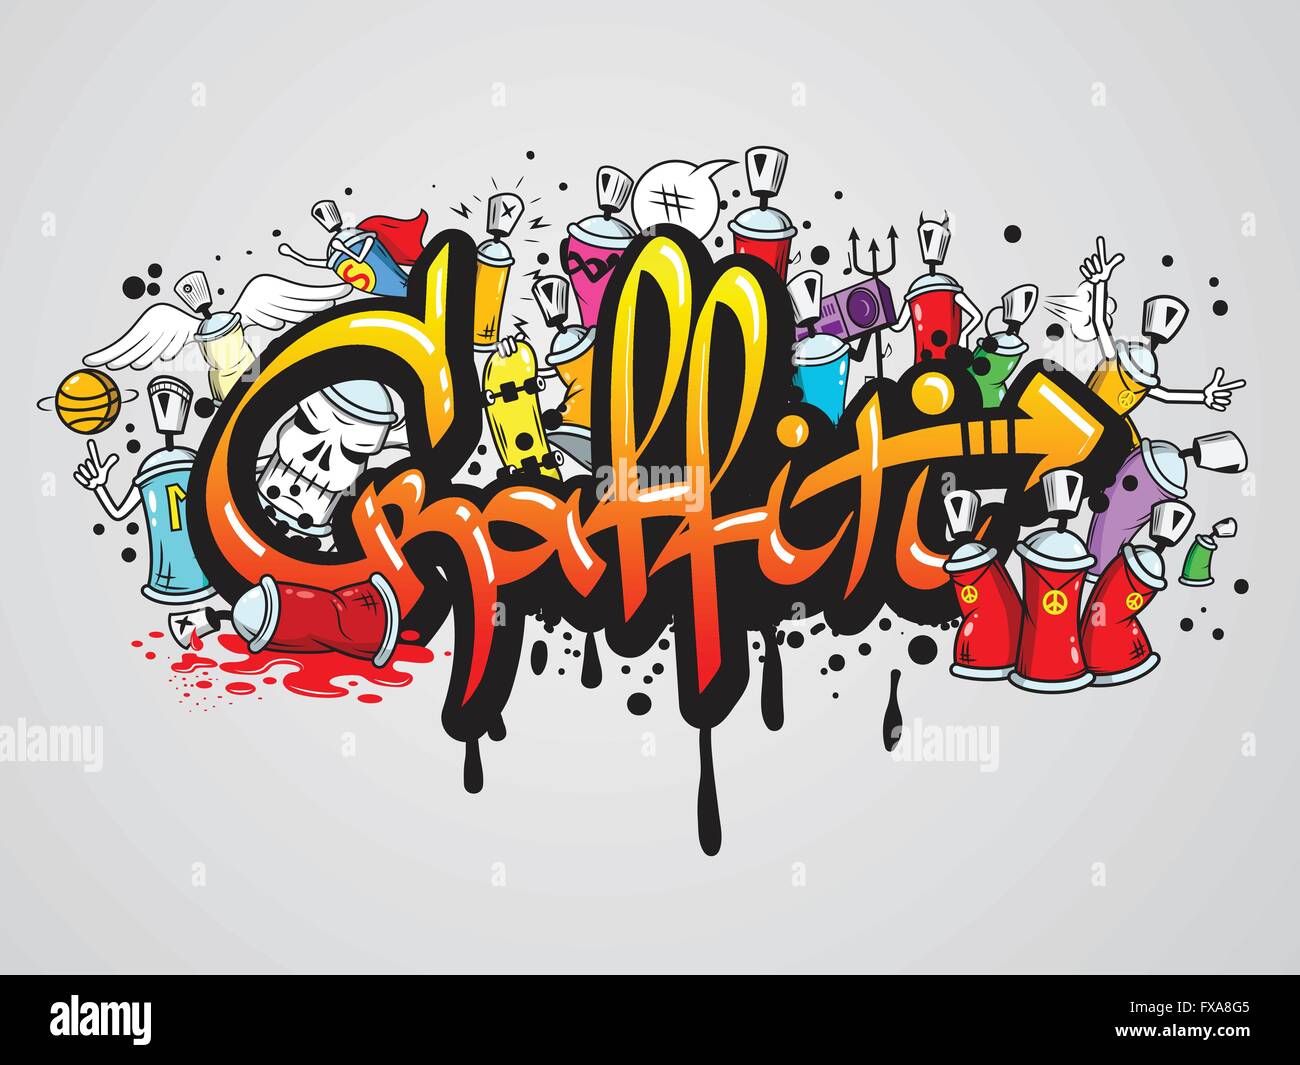 Graffiti Characters Theory  selected examples 2019  Graffiti Empire